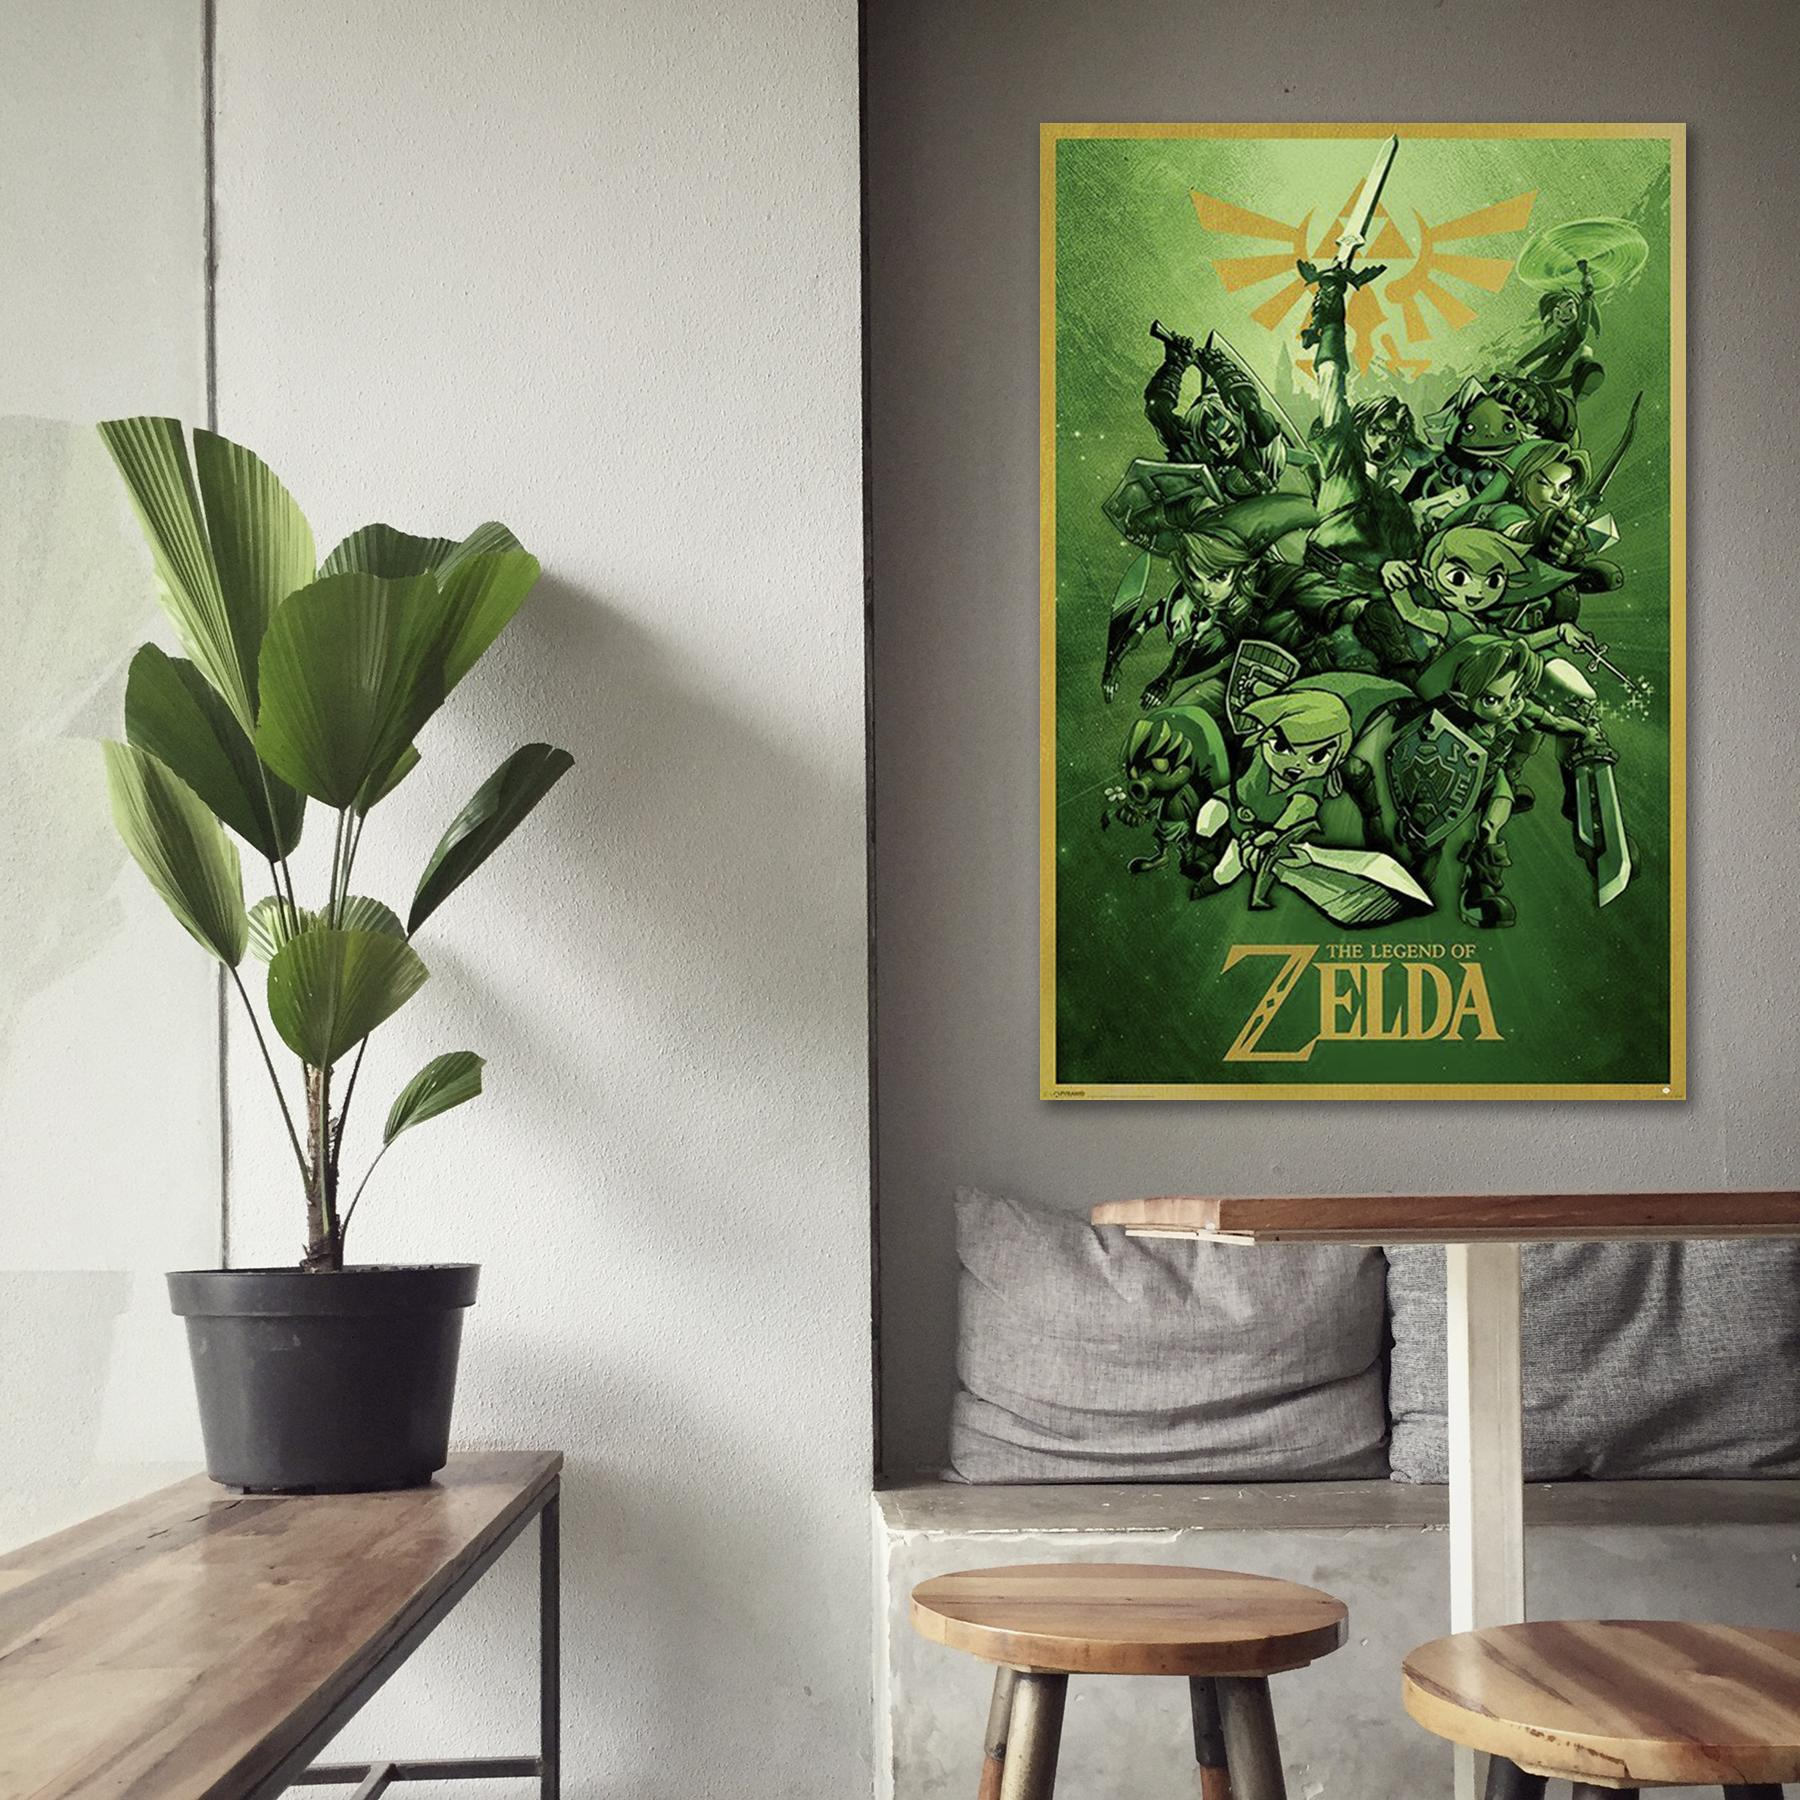 PYRAMID The Link Poster INTERNATIONAL Zelda of Großformatige Poster Legend